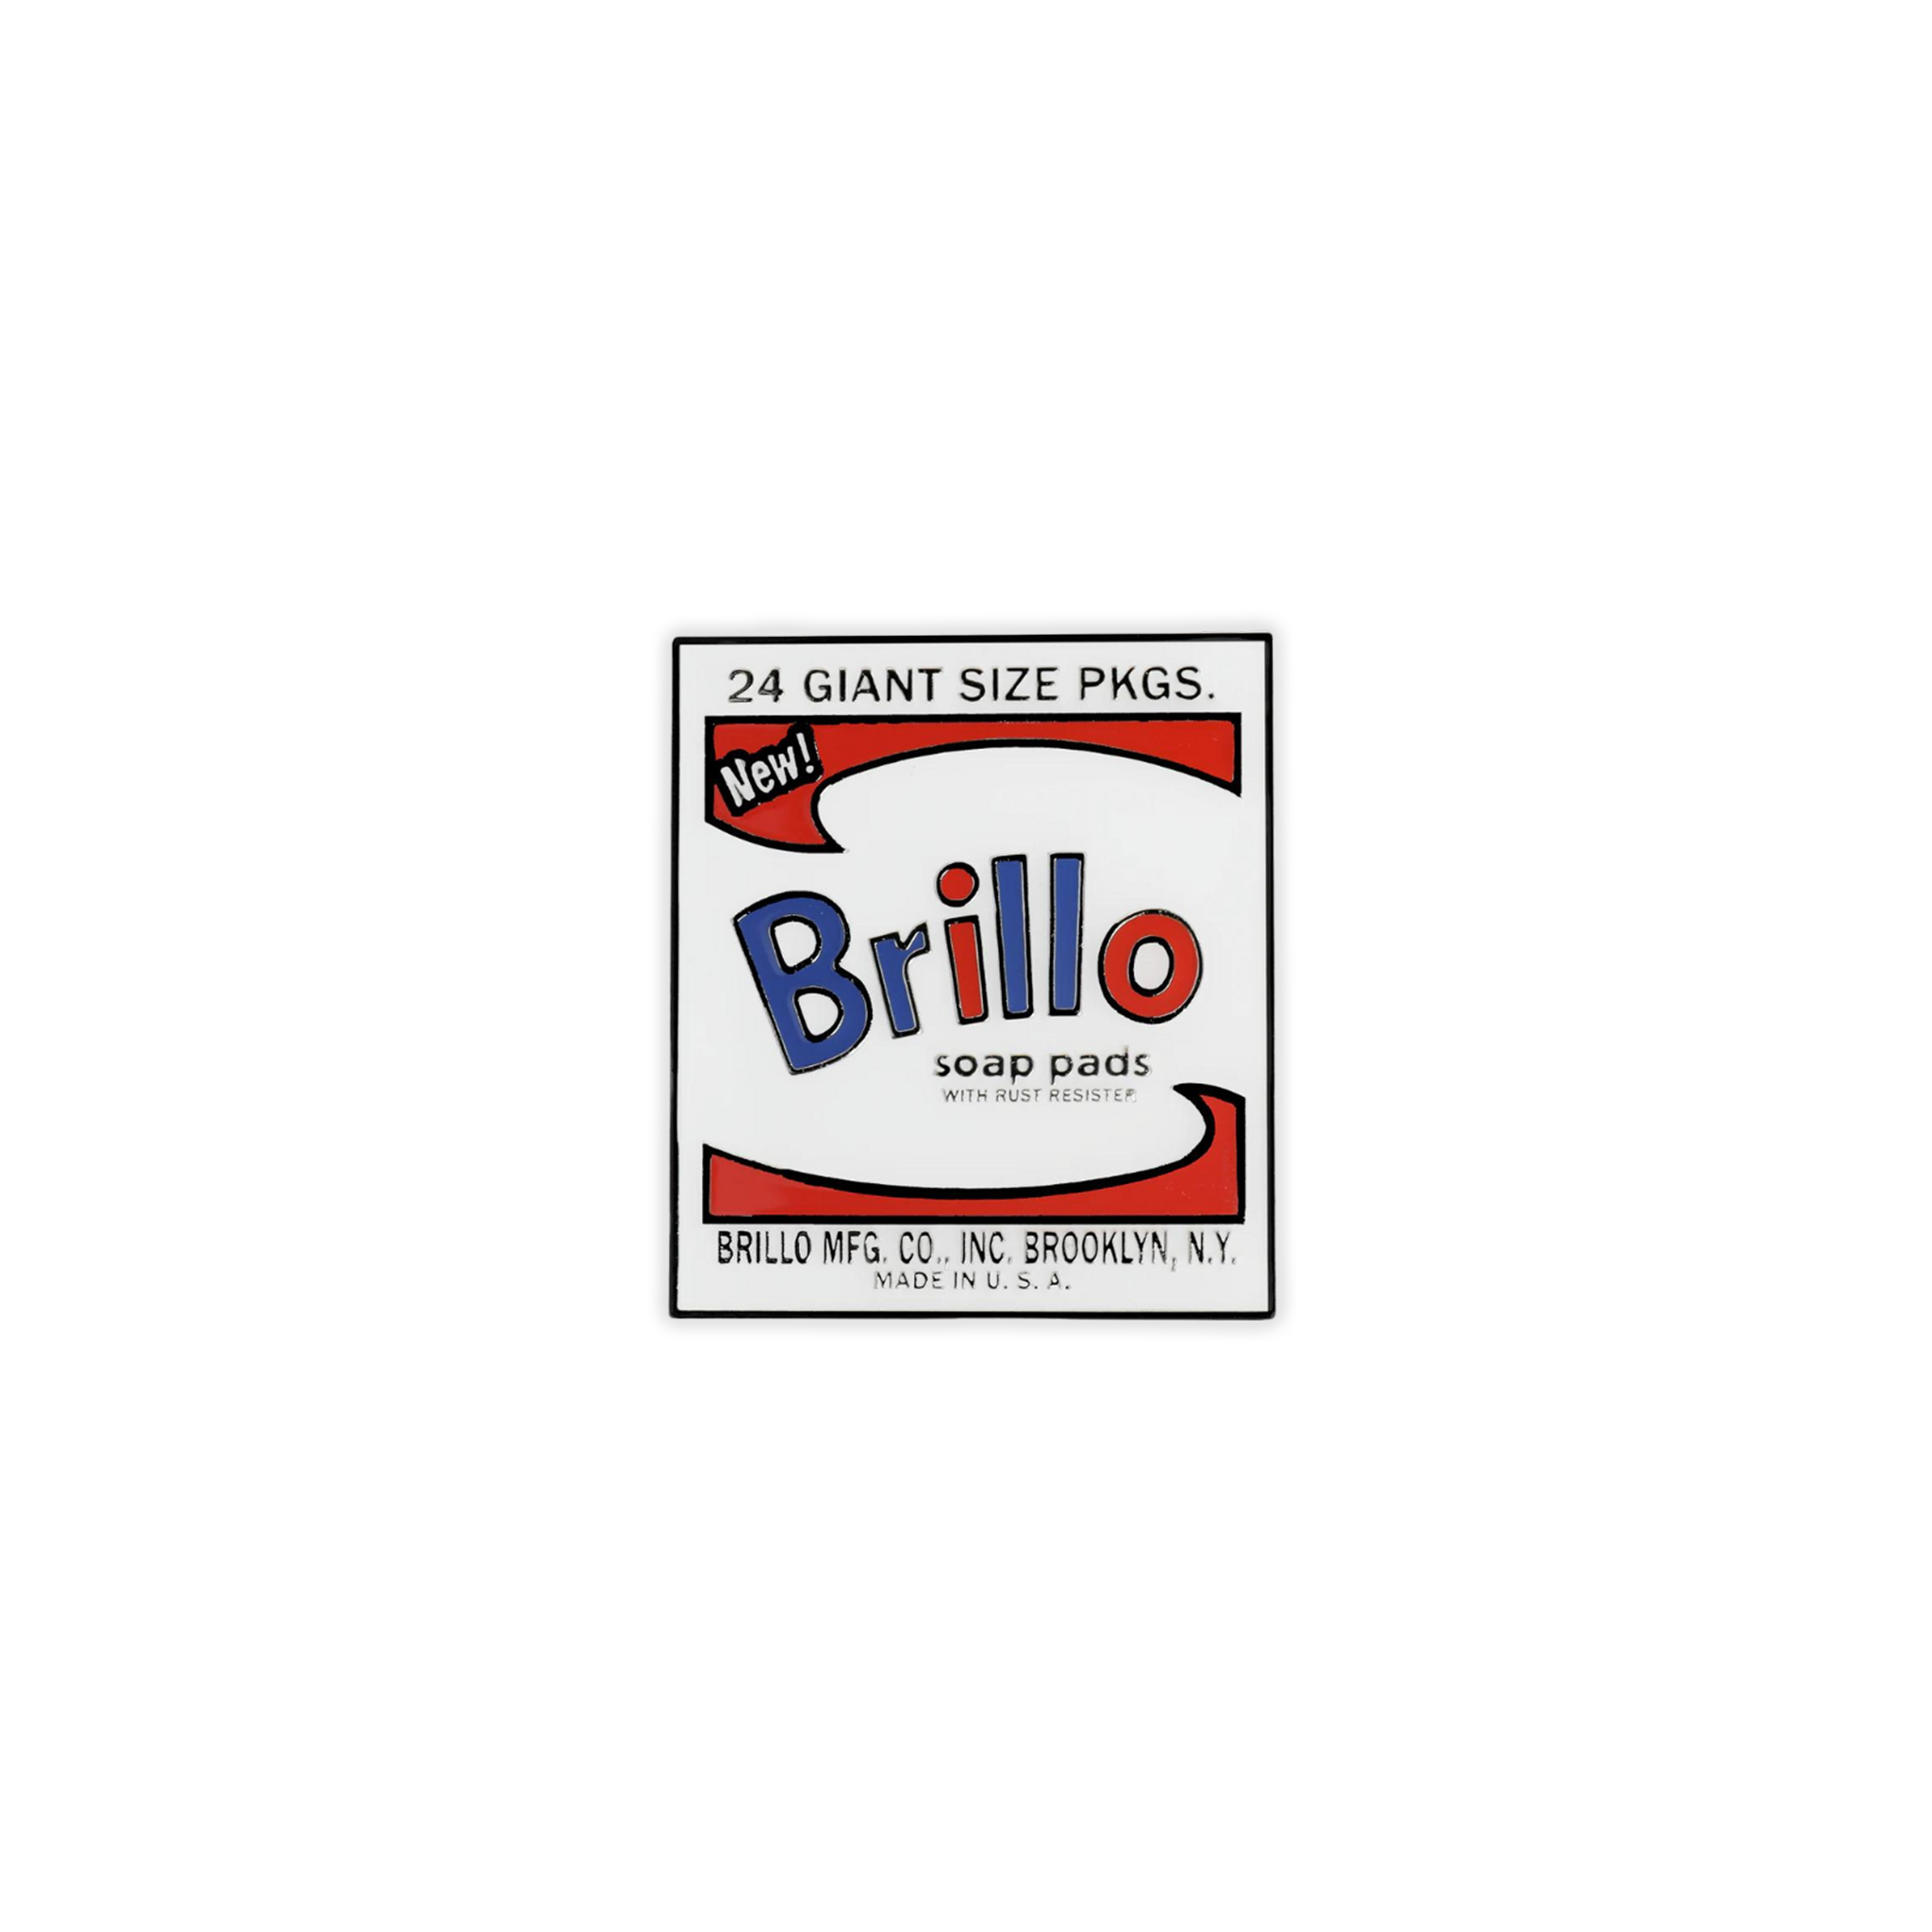 Andy Warhol Brillo Box Pin